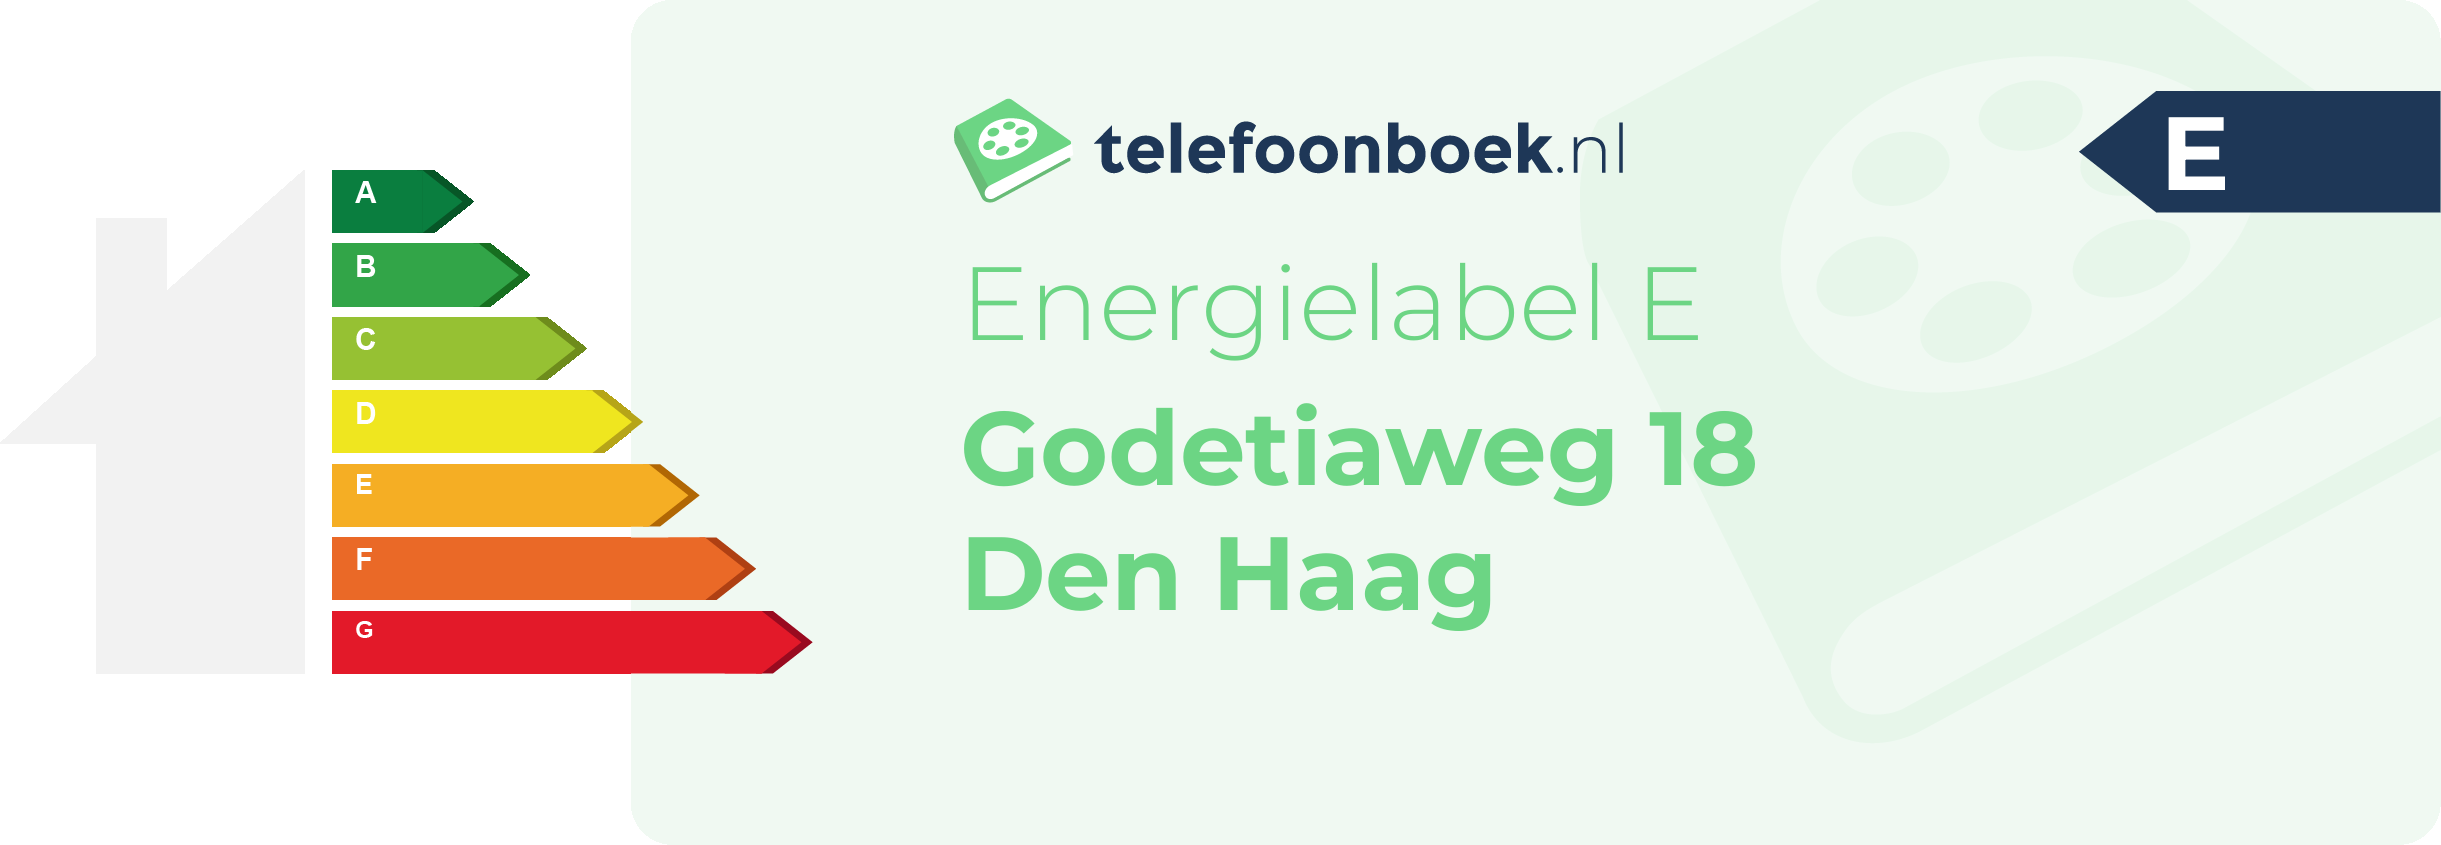 Energielabel Godetiaweg 18 Den Haag